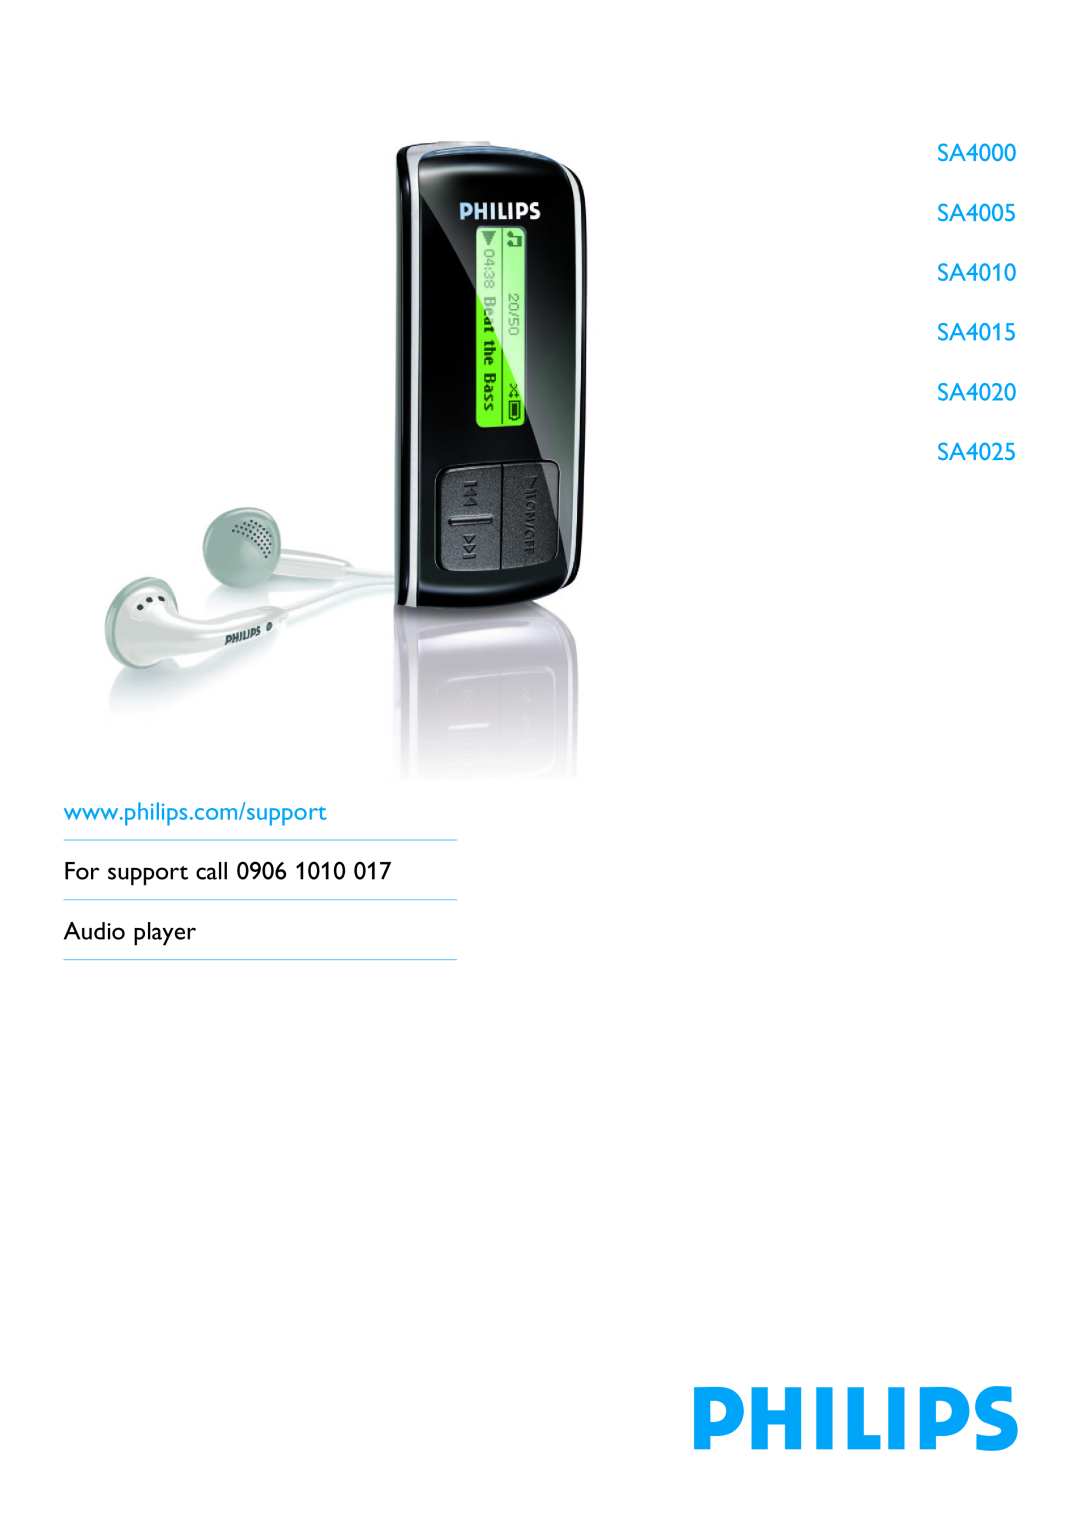 Porter-Cable SA 4000 manual SA4000 SA4005 SA4010 SA4015 SA4020 SA4025, For support call 0906 1010 Audio player 